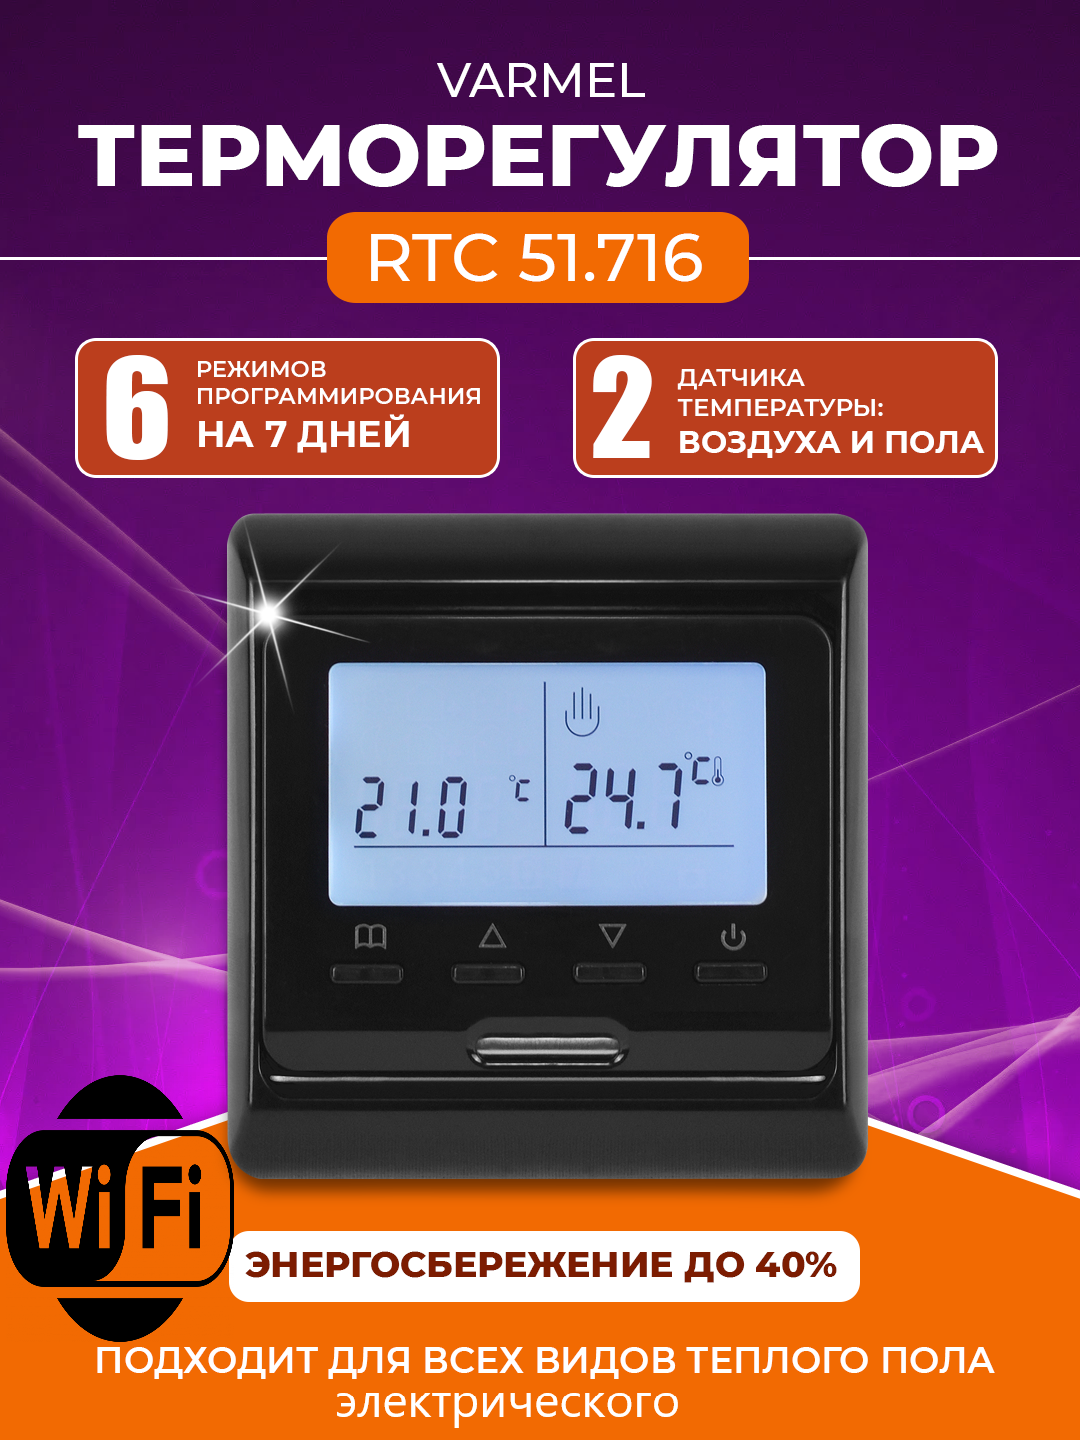 Терморегулятор Varmel RTC 51.716 черный с Wi-Fi